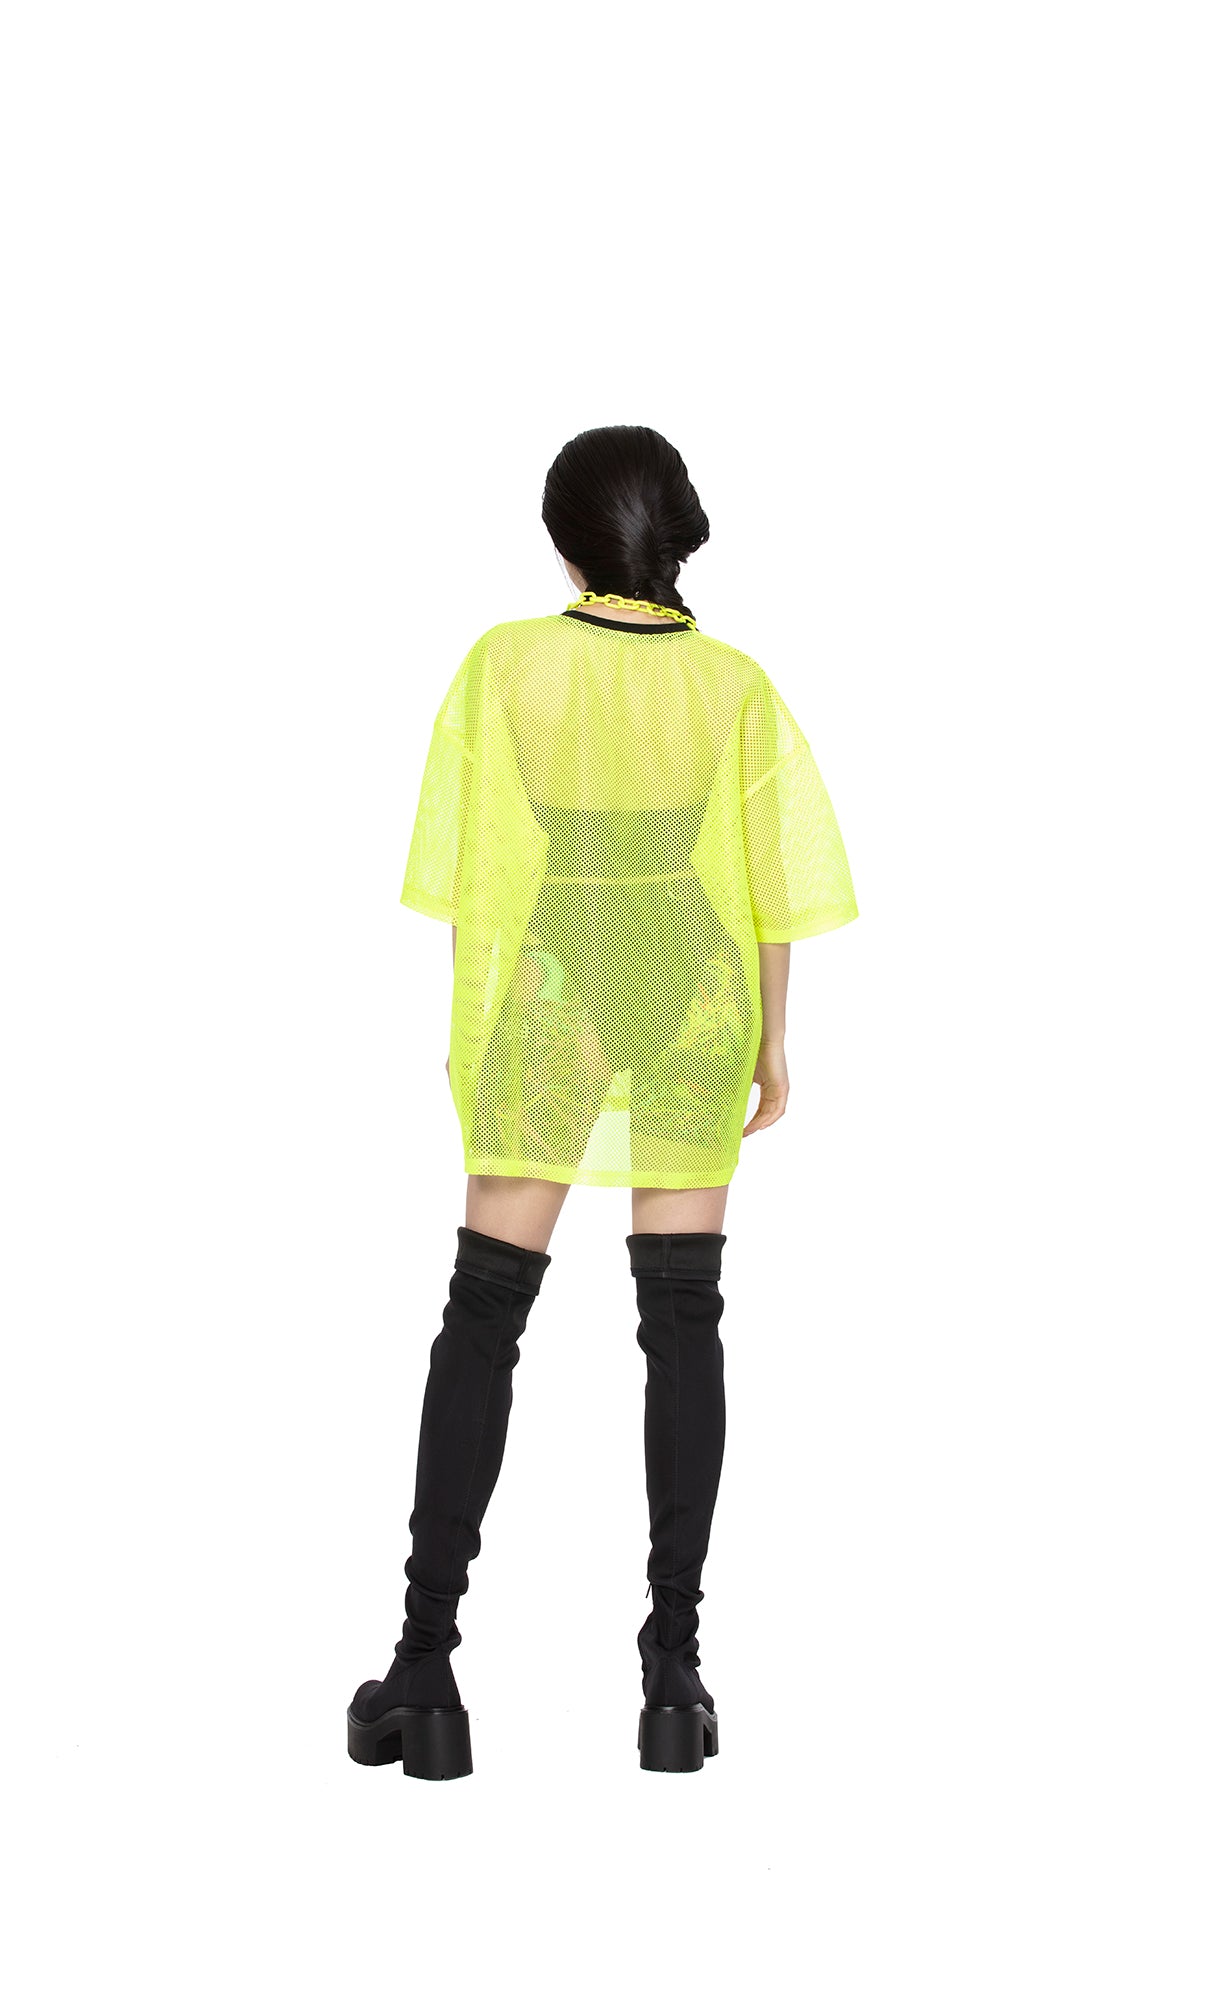 Unisex-Mesh-T-Shirt mit reflektierender Regenbogenaufschrift [Neongelb]